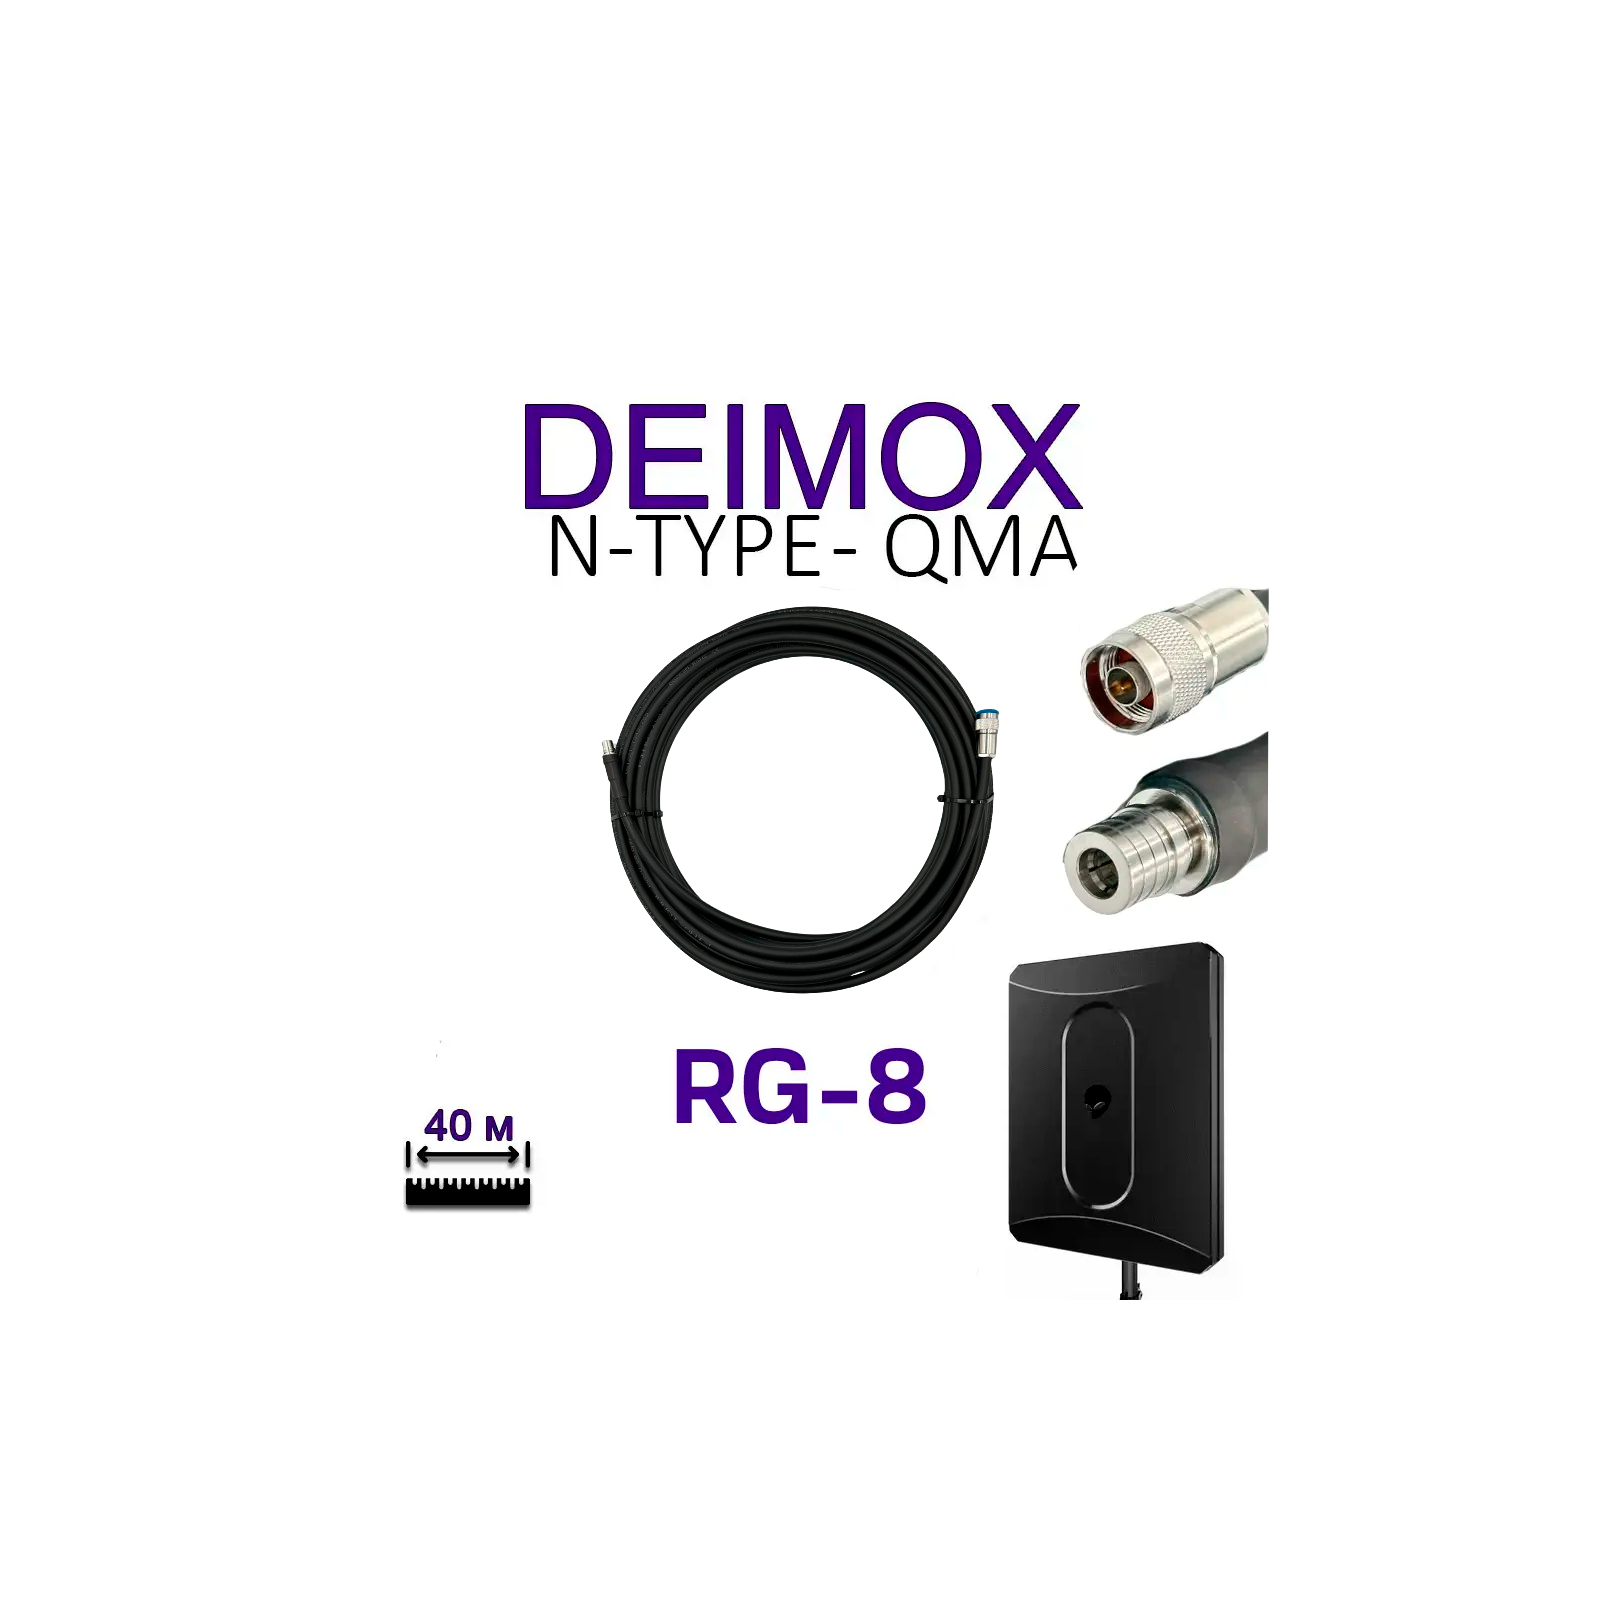 Кабель для дрона ALIENTECH RG8 для Deimox, QMA -N-type (2 шт) (Deimox, QMA -N-type) изображение 3